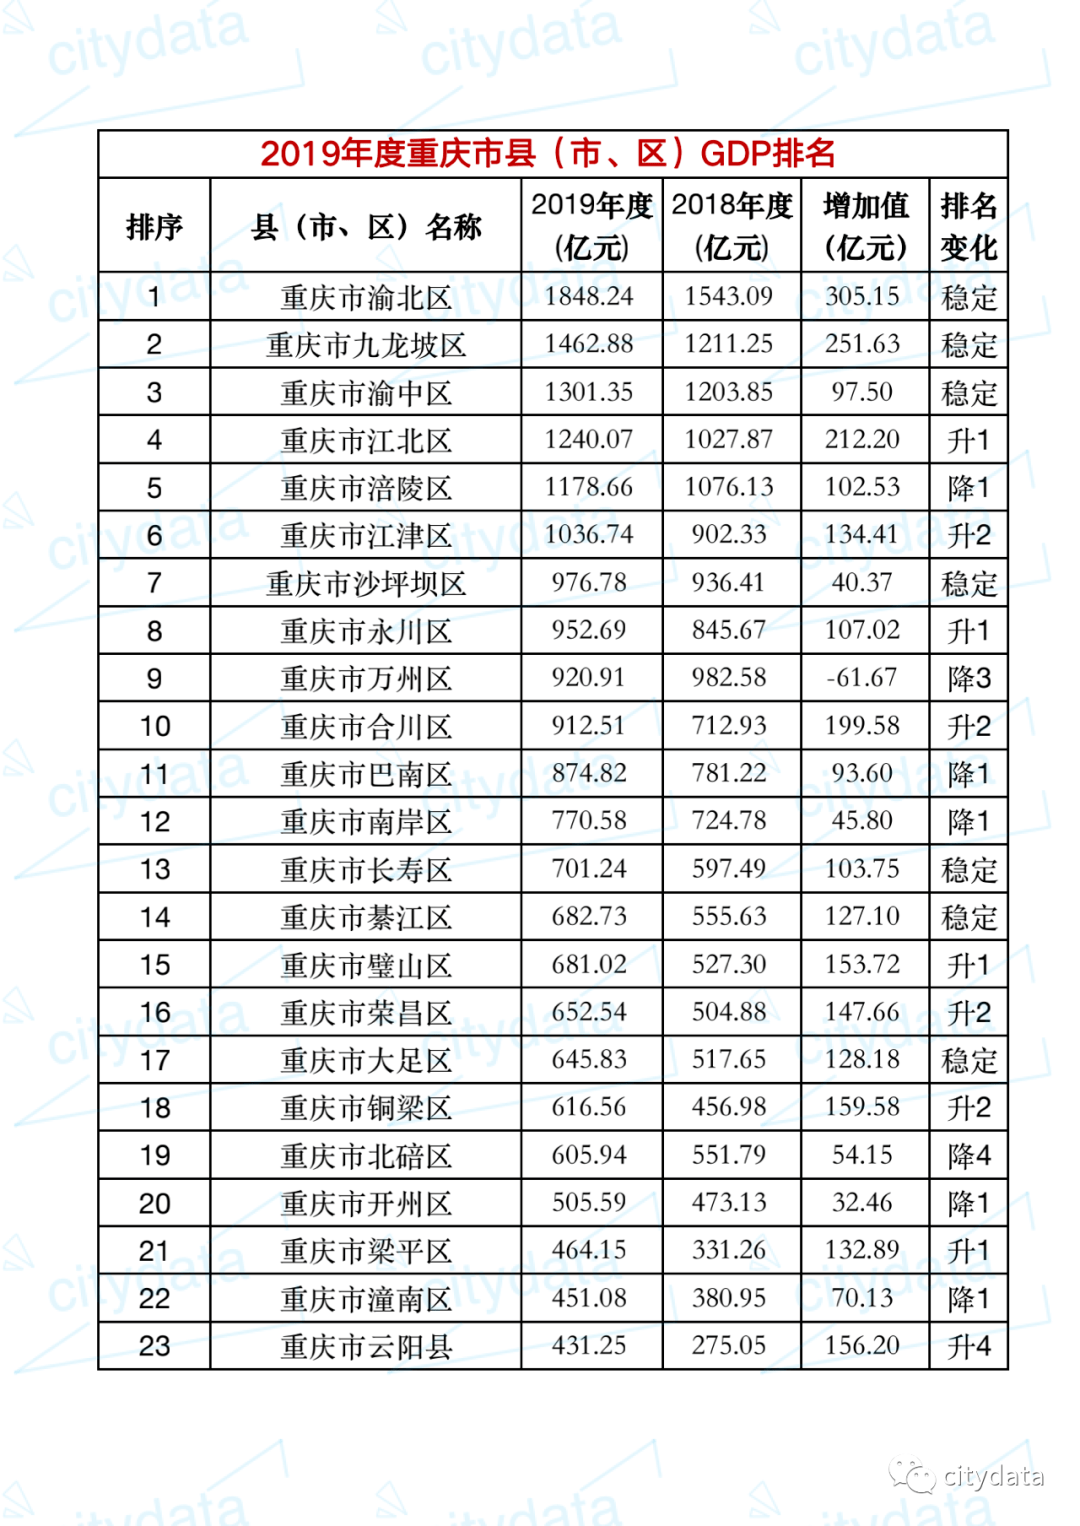 2019年重庆县区gdp排名渝北区超1800亿元居第一